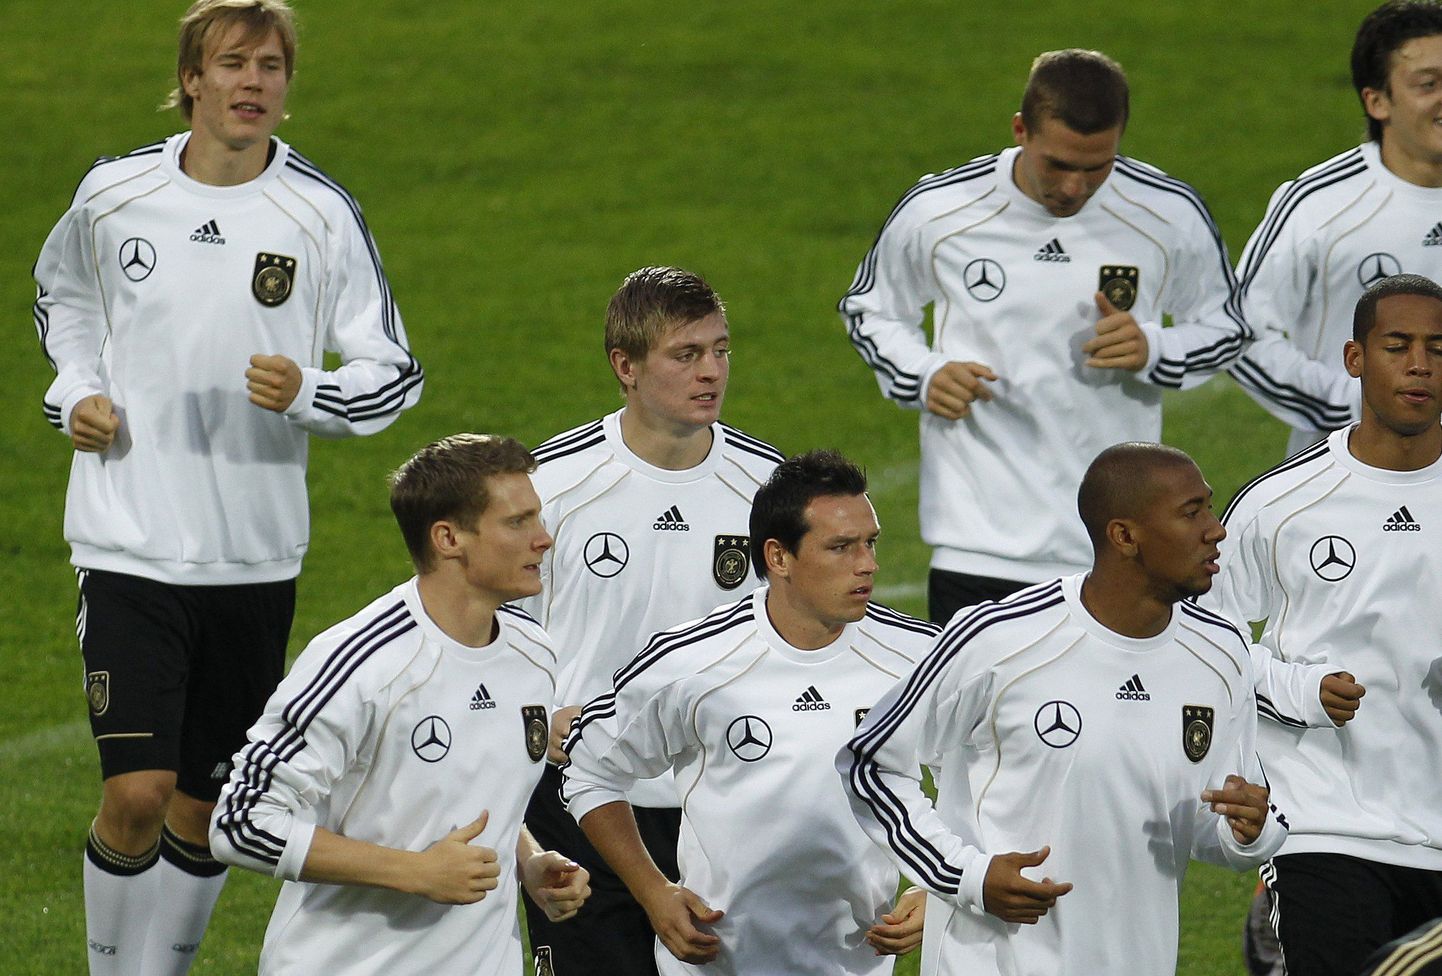 Saksamaa jalgpallikoondise treening.